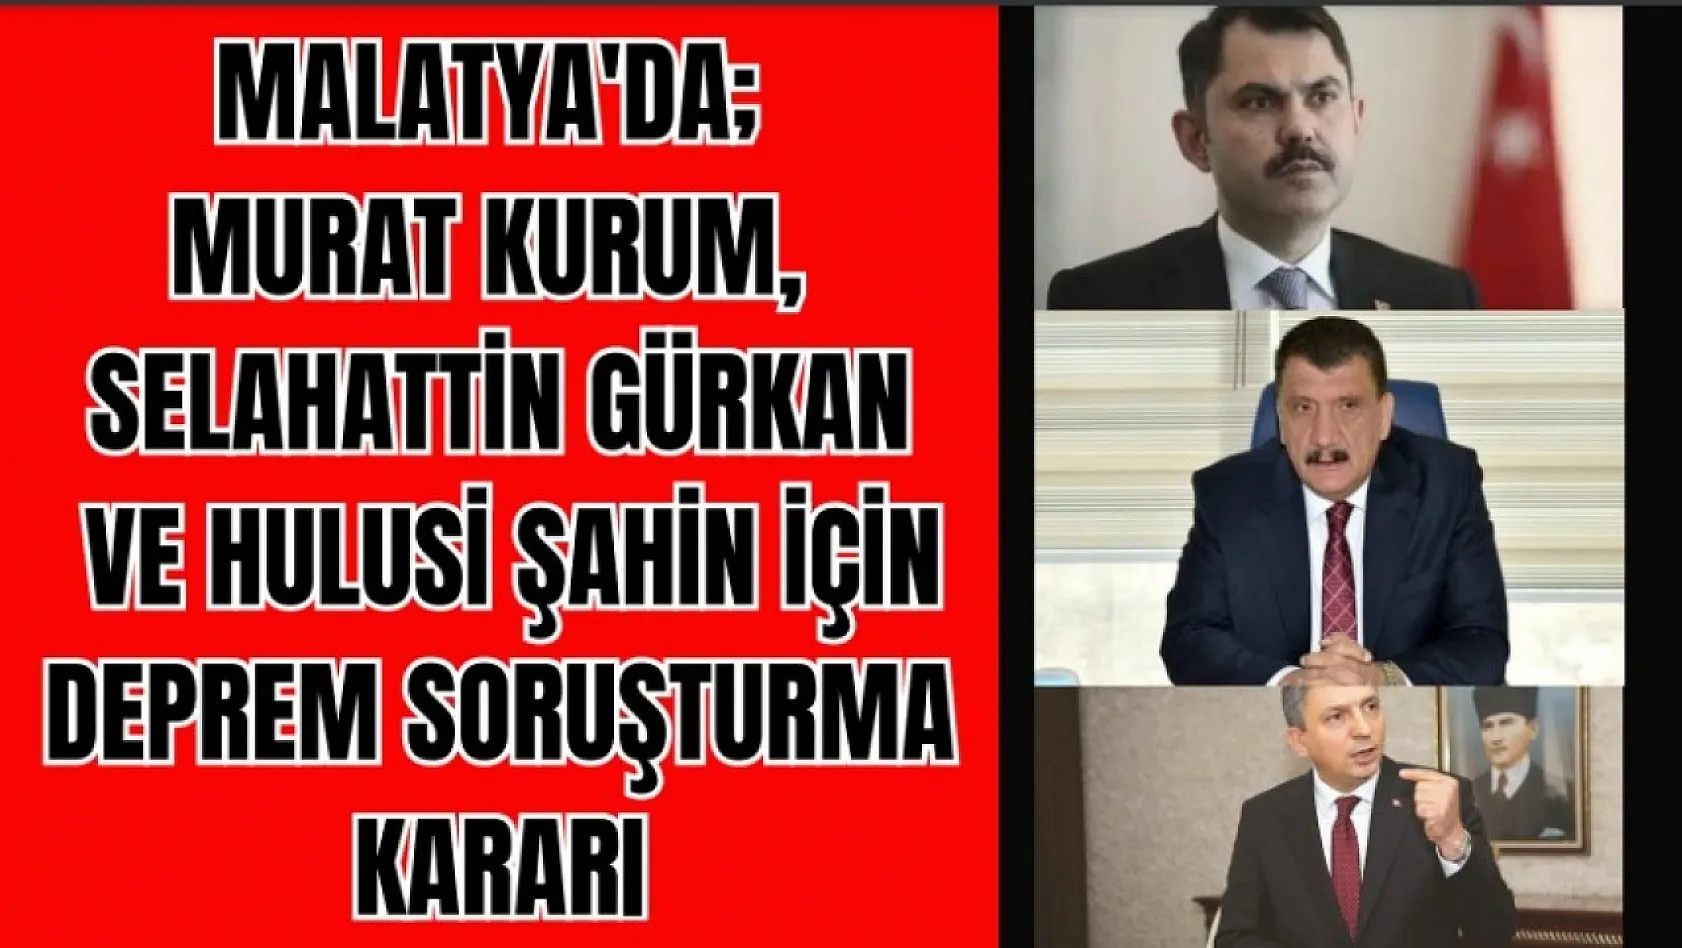 Malatya'da Murat Kurum, Selahattin Gürkan ve Hulusi Şahin için 'soruşturmaya gerek yok' kararı